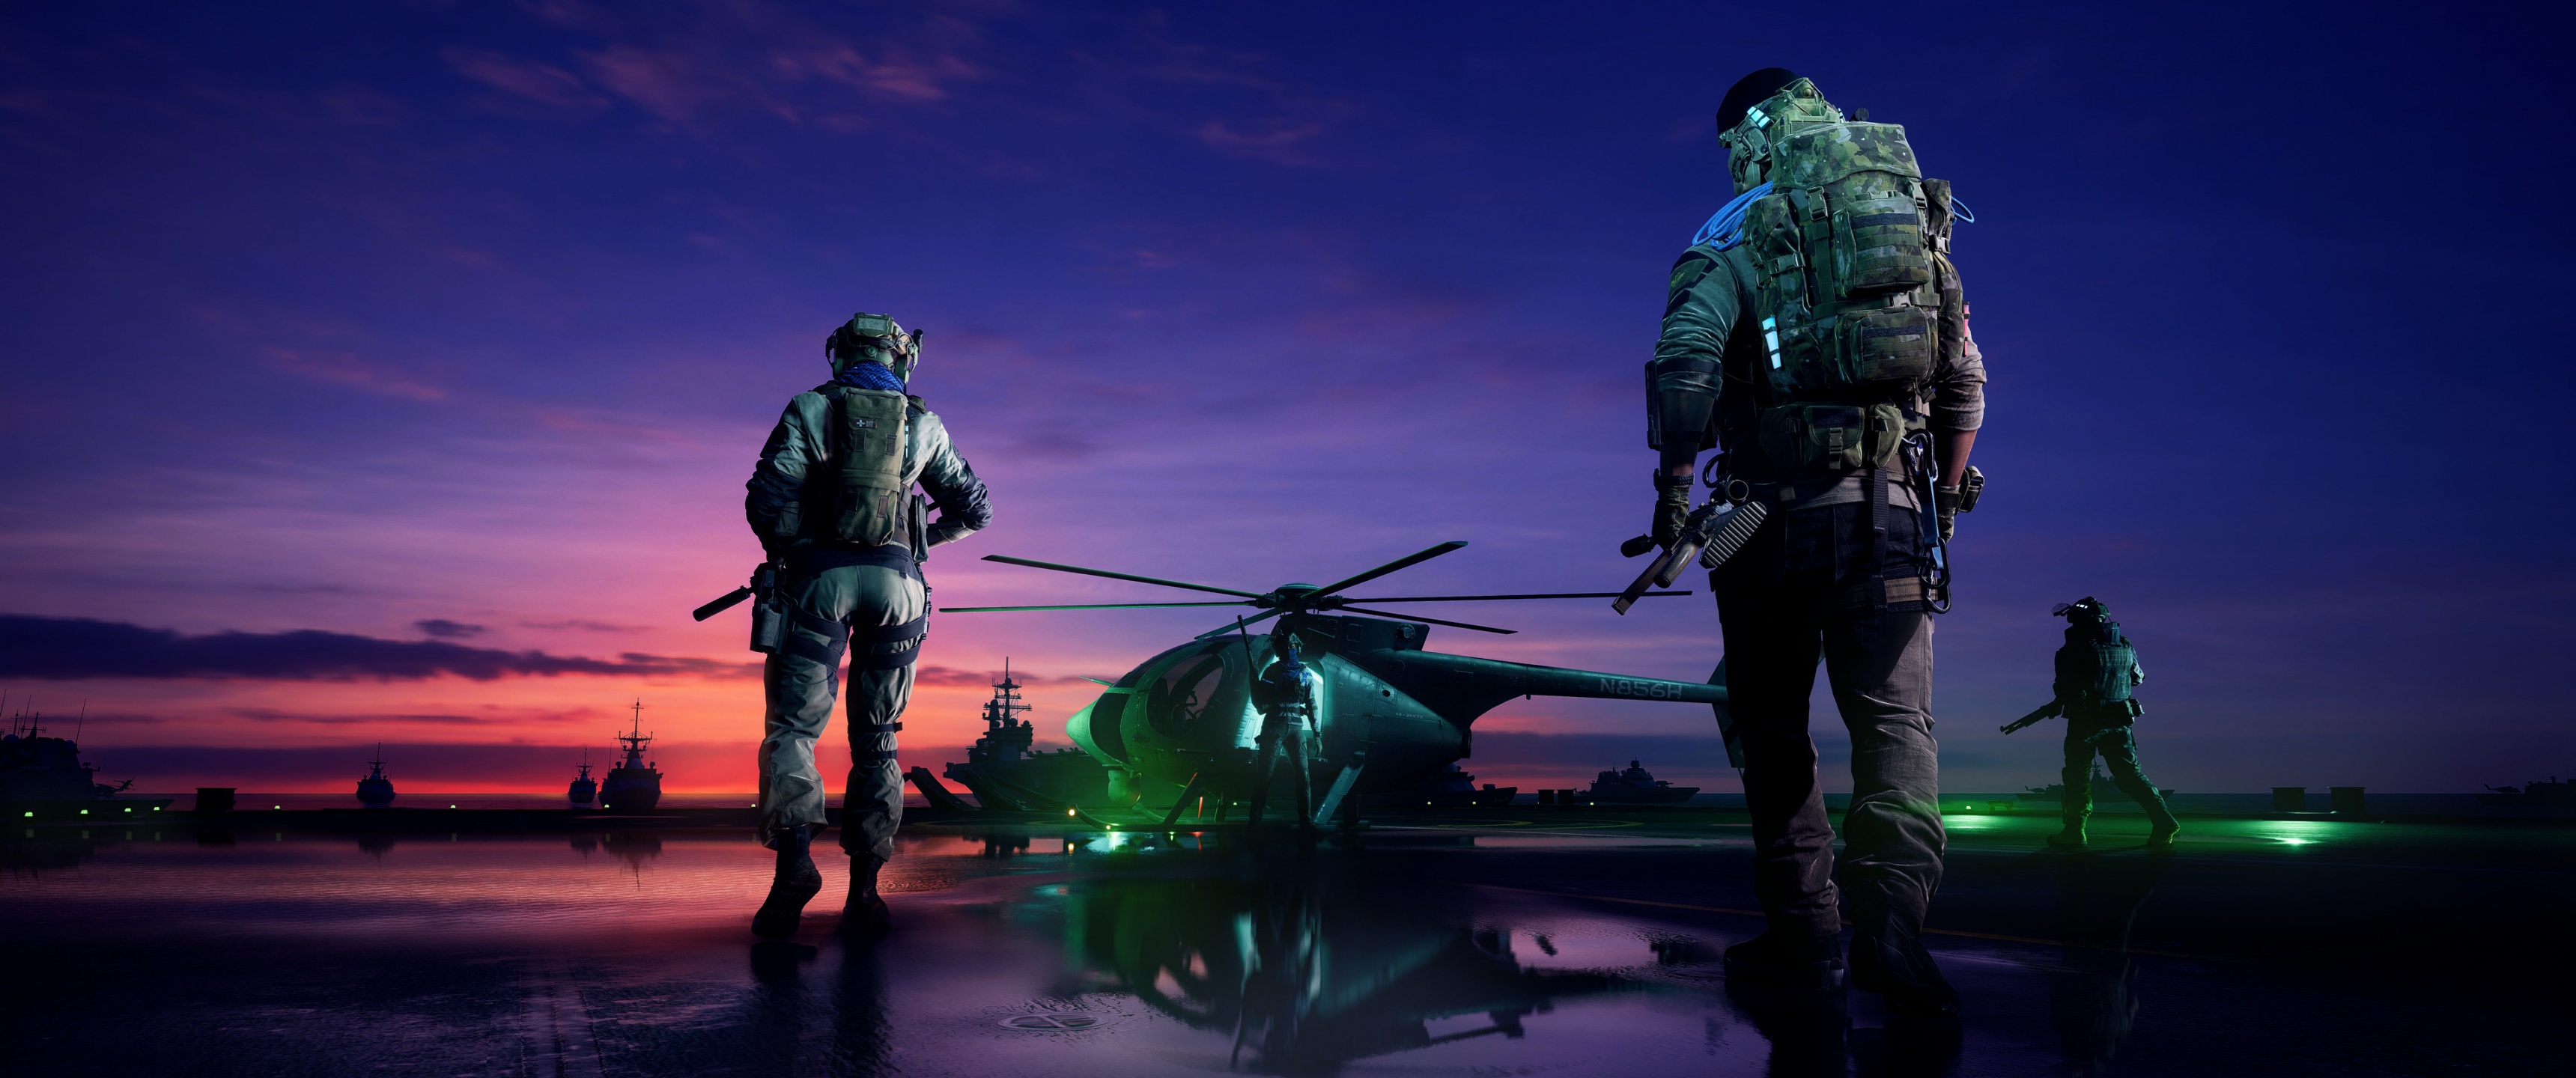 Battlefield 2042 là phiên bản mới nhất của thương hiệu Battlefield hấp dẫn và đầy thử thách. Với các trận chiến đồ sộ trên khắp thế giới, game thủ sẽ được tham gia vào một cuộc chiến tuyệt vời. Hãy nhấn vào hình ảnh để khám phá thêm về game này.